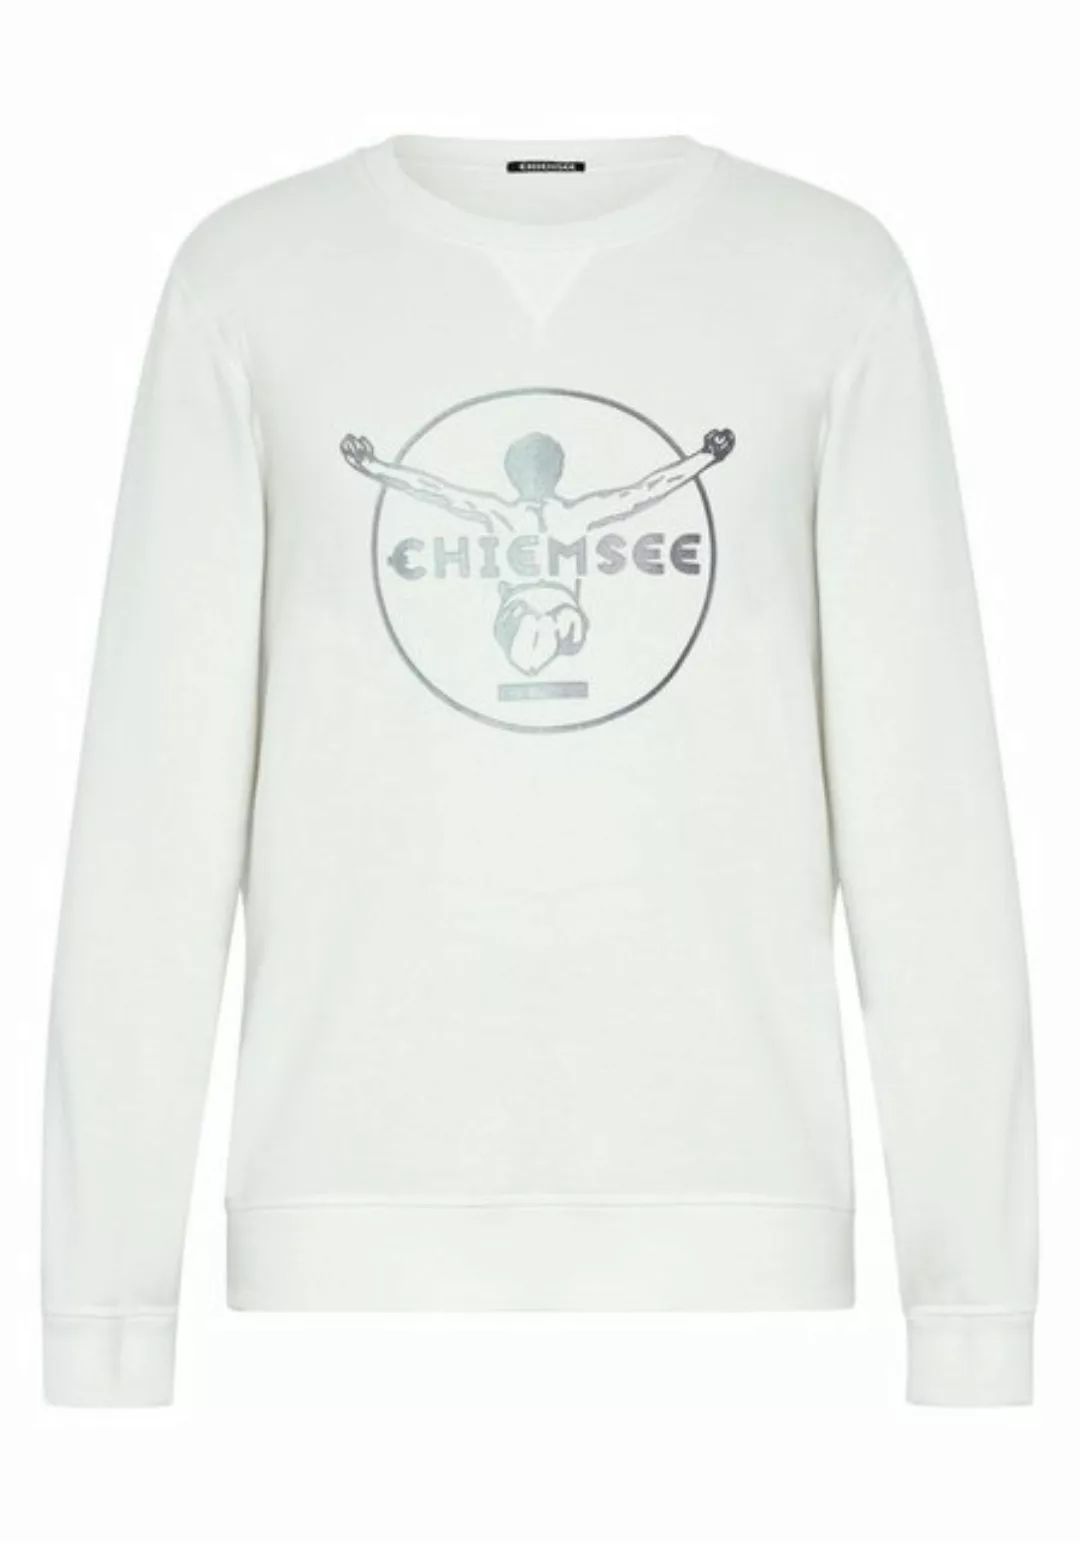 Chiemsee Sweatshirt Sweater im Label-Look 1 günstig online kaufen